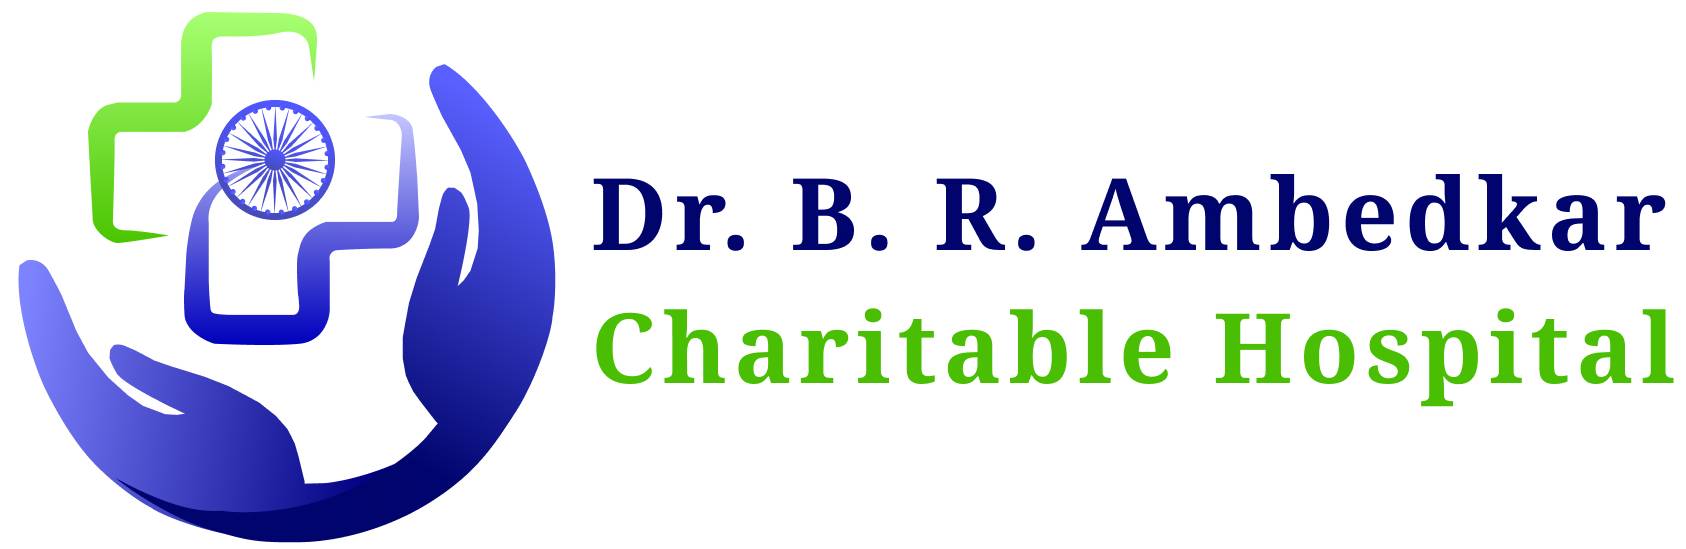 Ambedkar Charitable Hospital